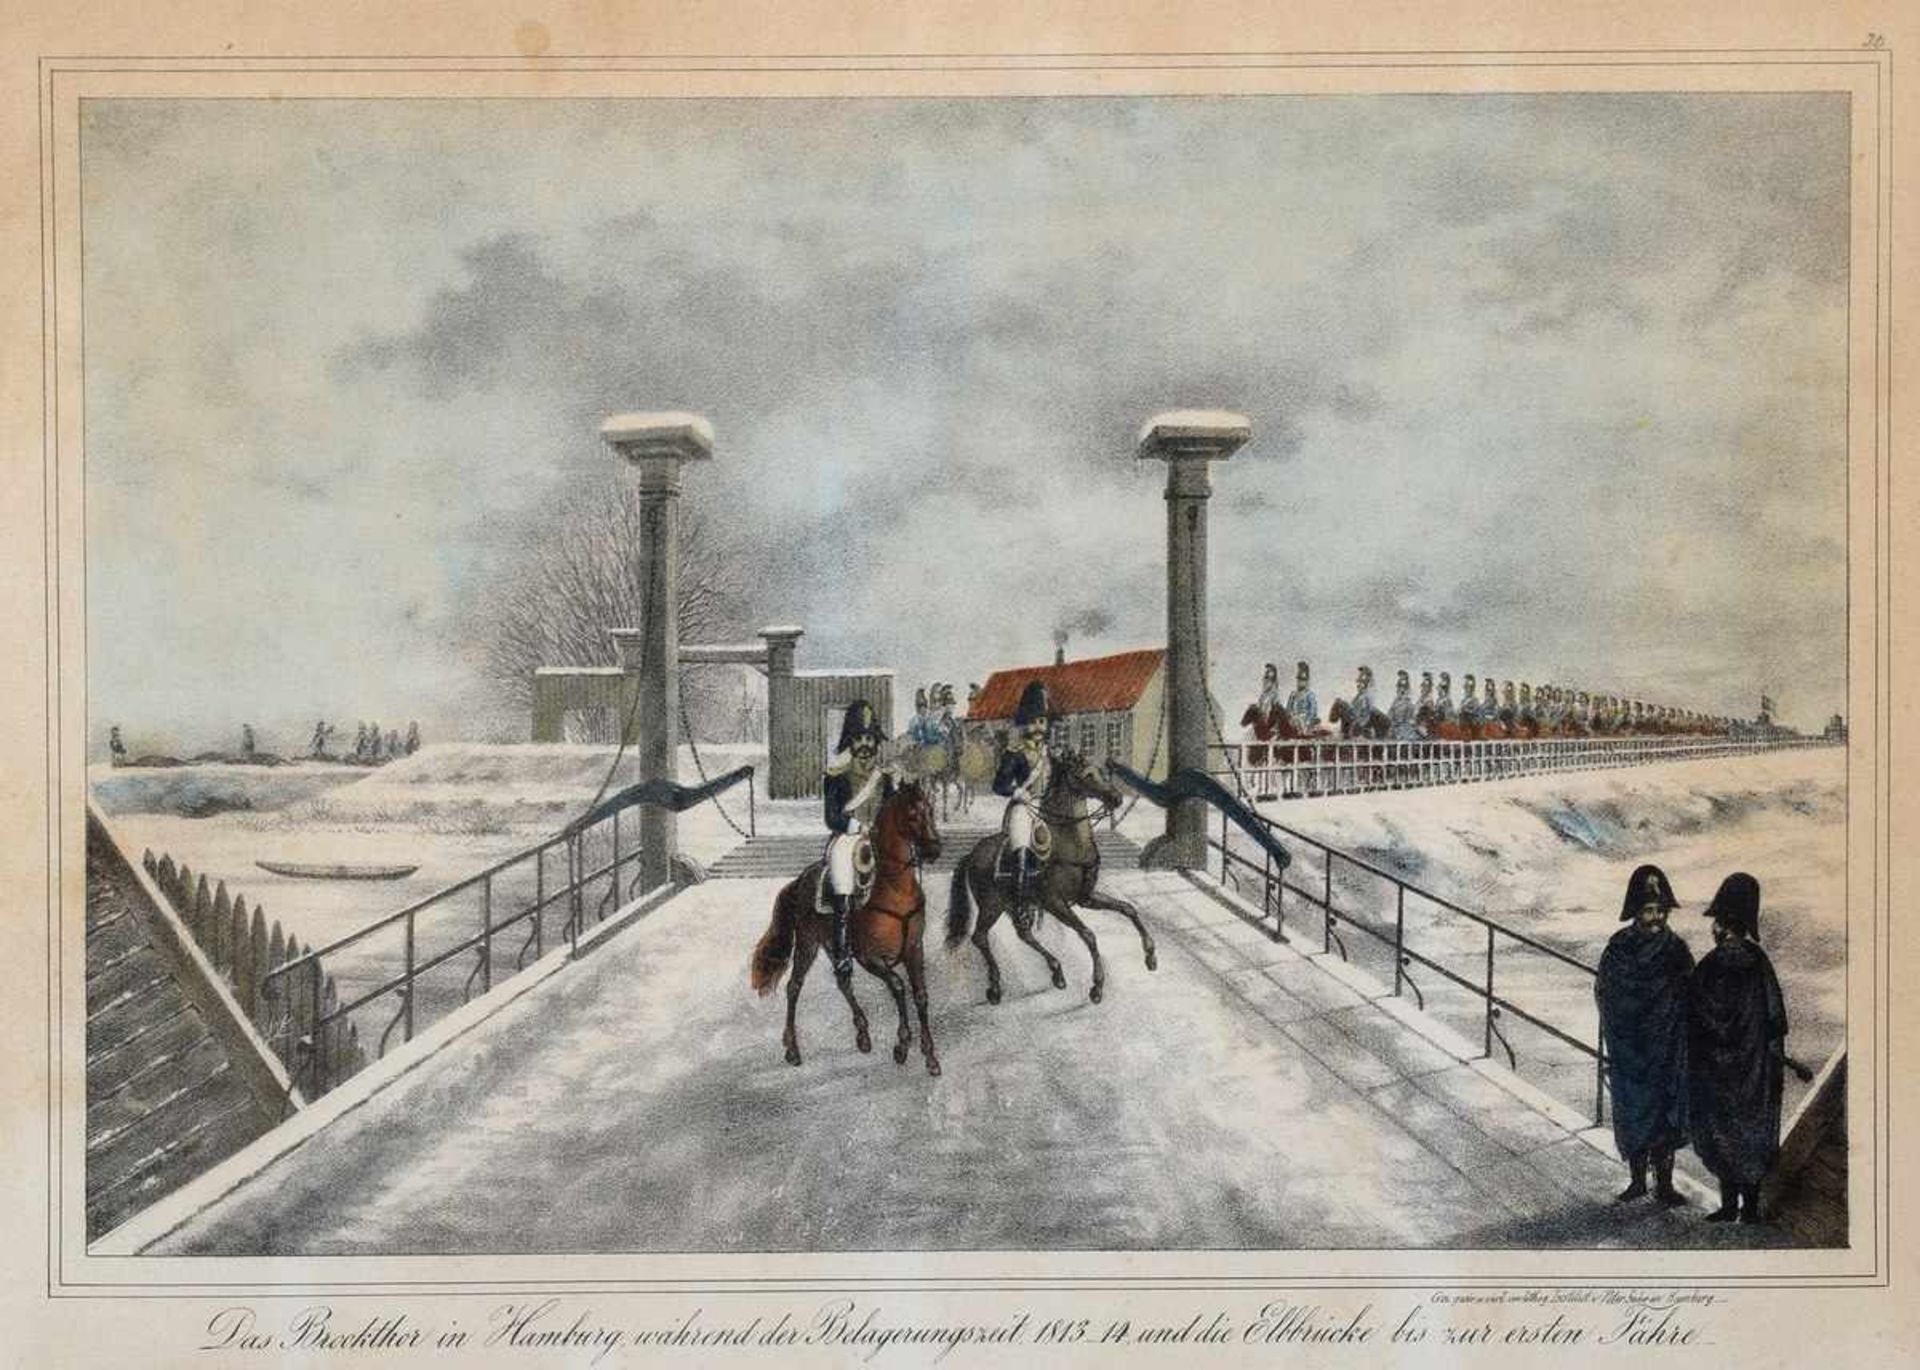 Hamburgensie "Brooktor in Hamburg während der Belagerungszeit 1813/14 und die Elbbrücke bis zur